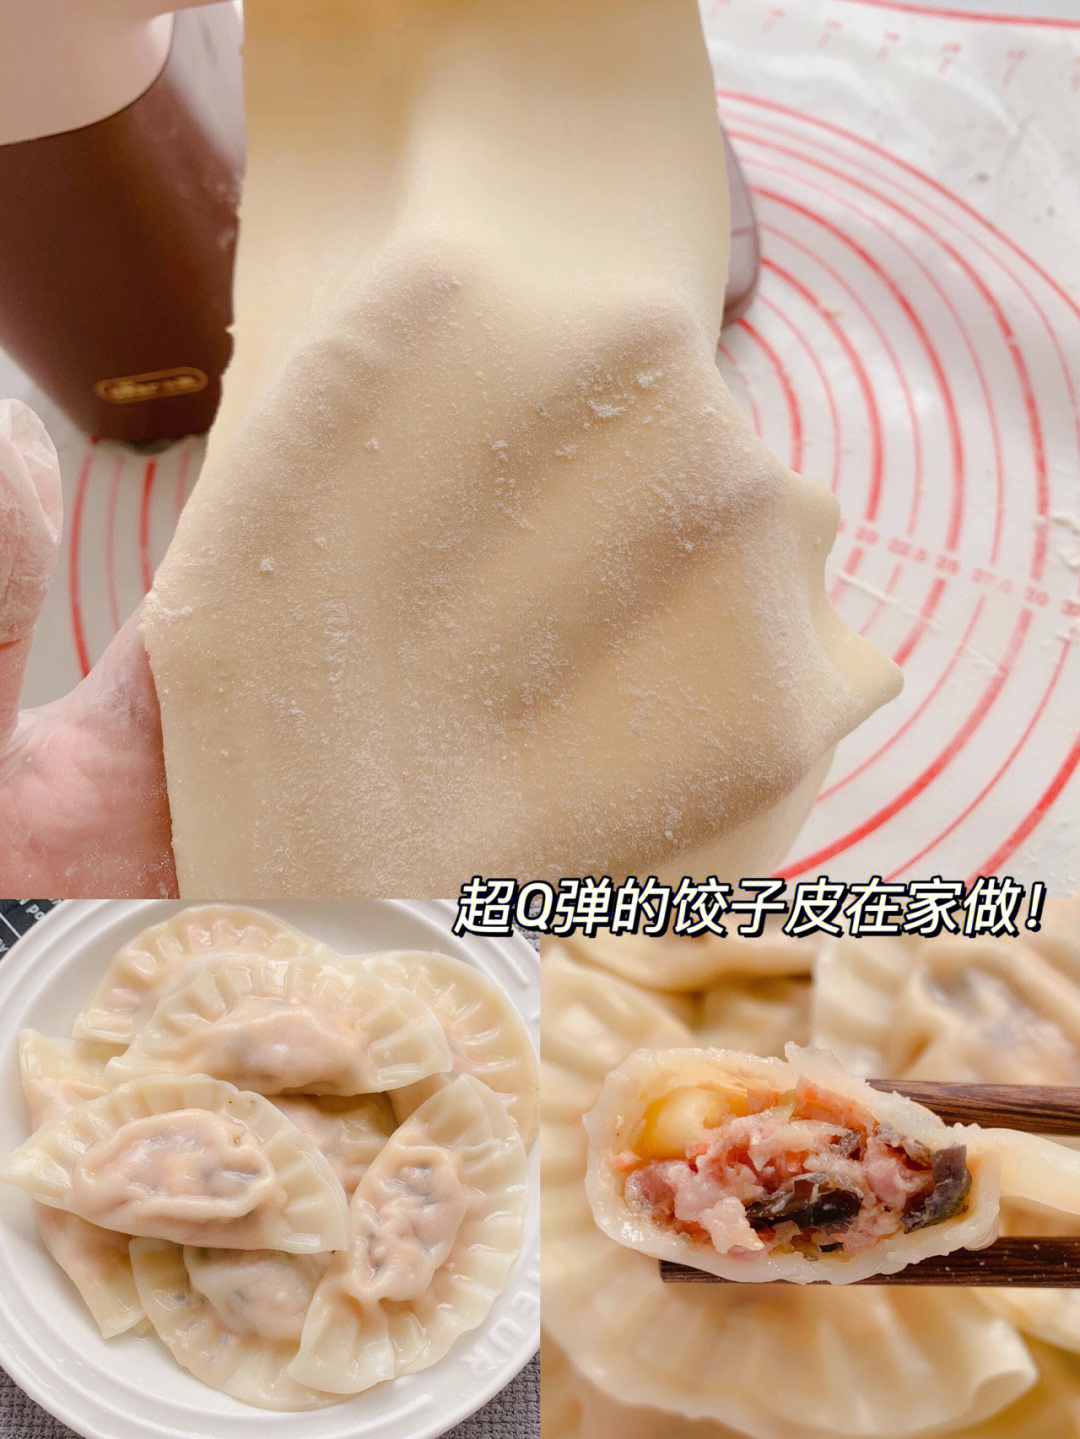 如何制作饺子皮图片